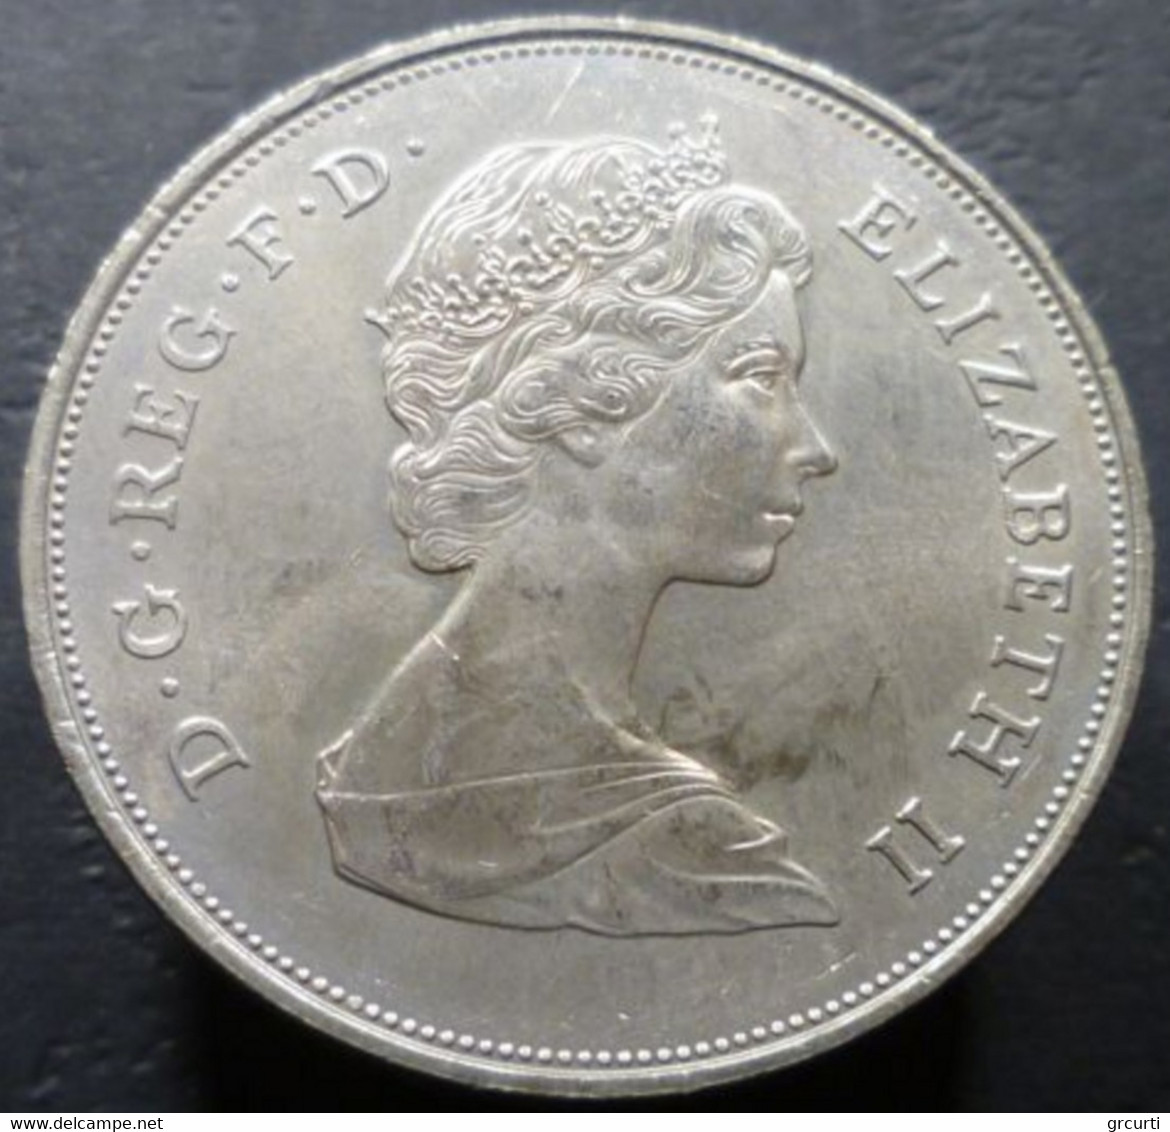 Gran Bretagna - 25 New Pence 1980 - 80° Compleanno Della Regina Madre - KM# 921 - 25 New Pence